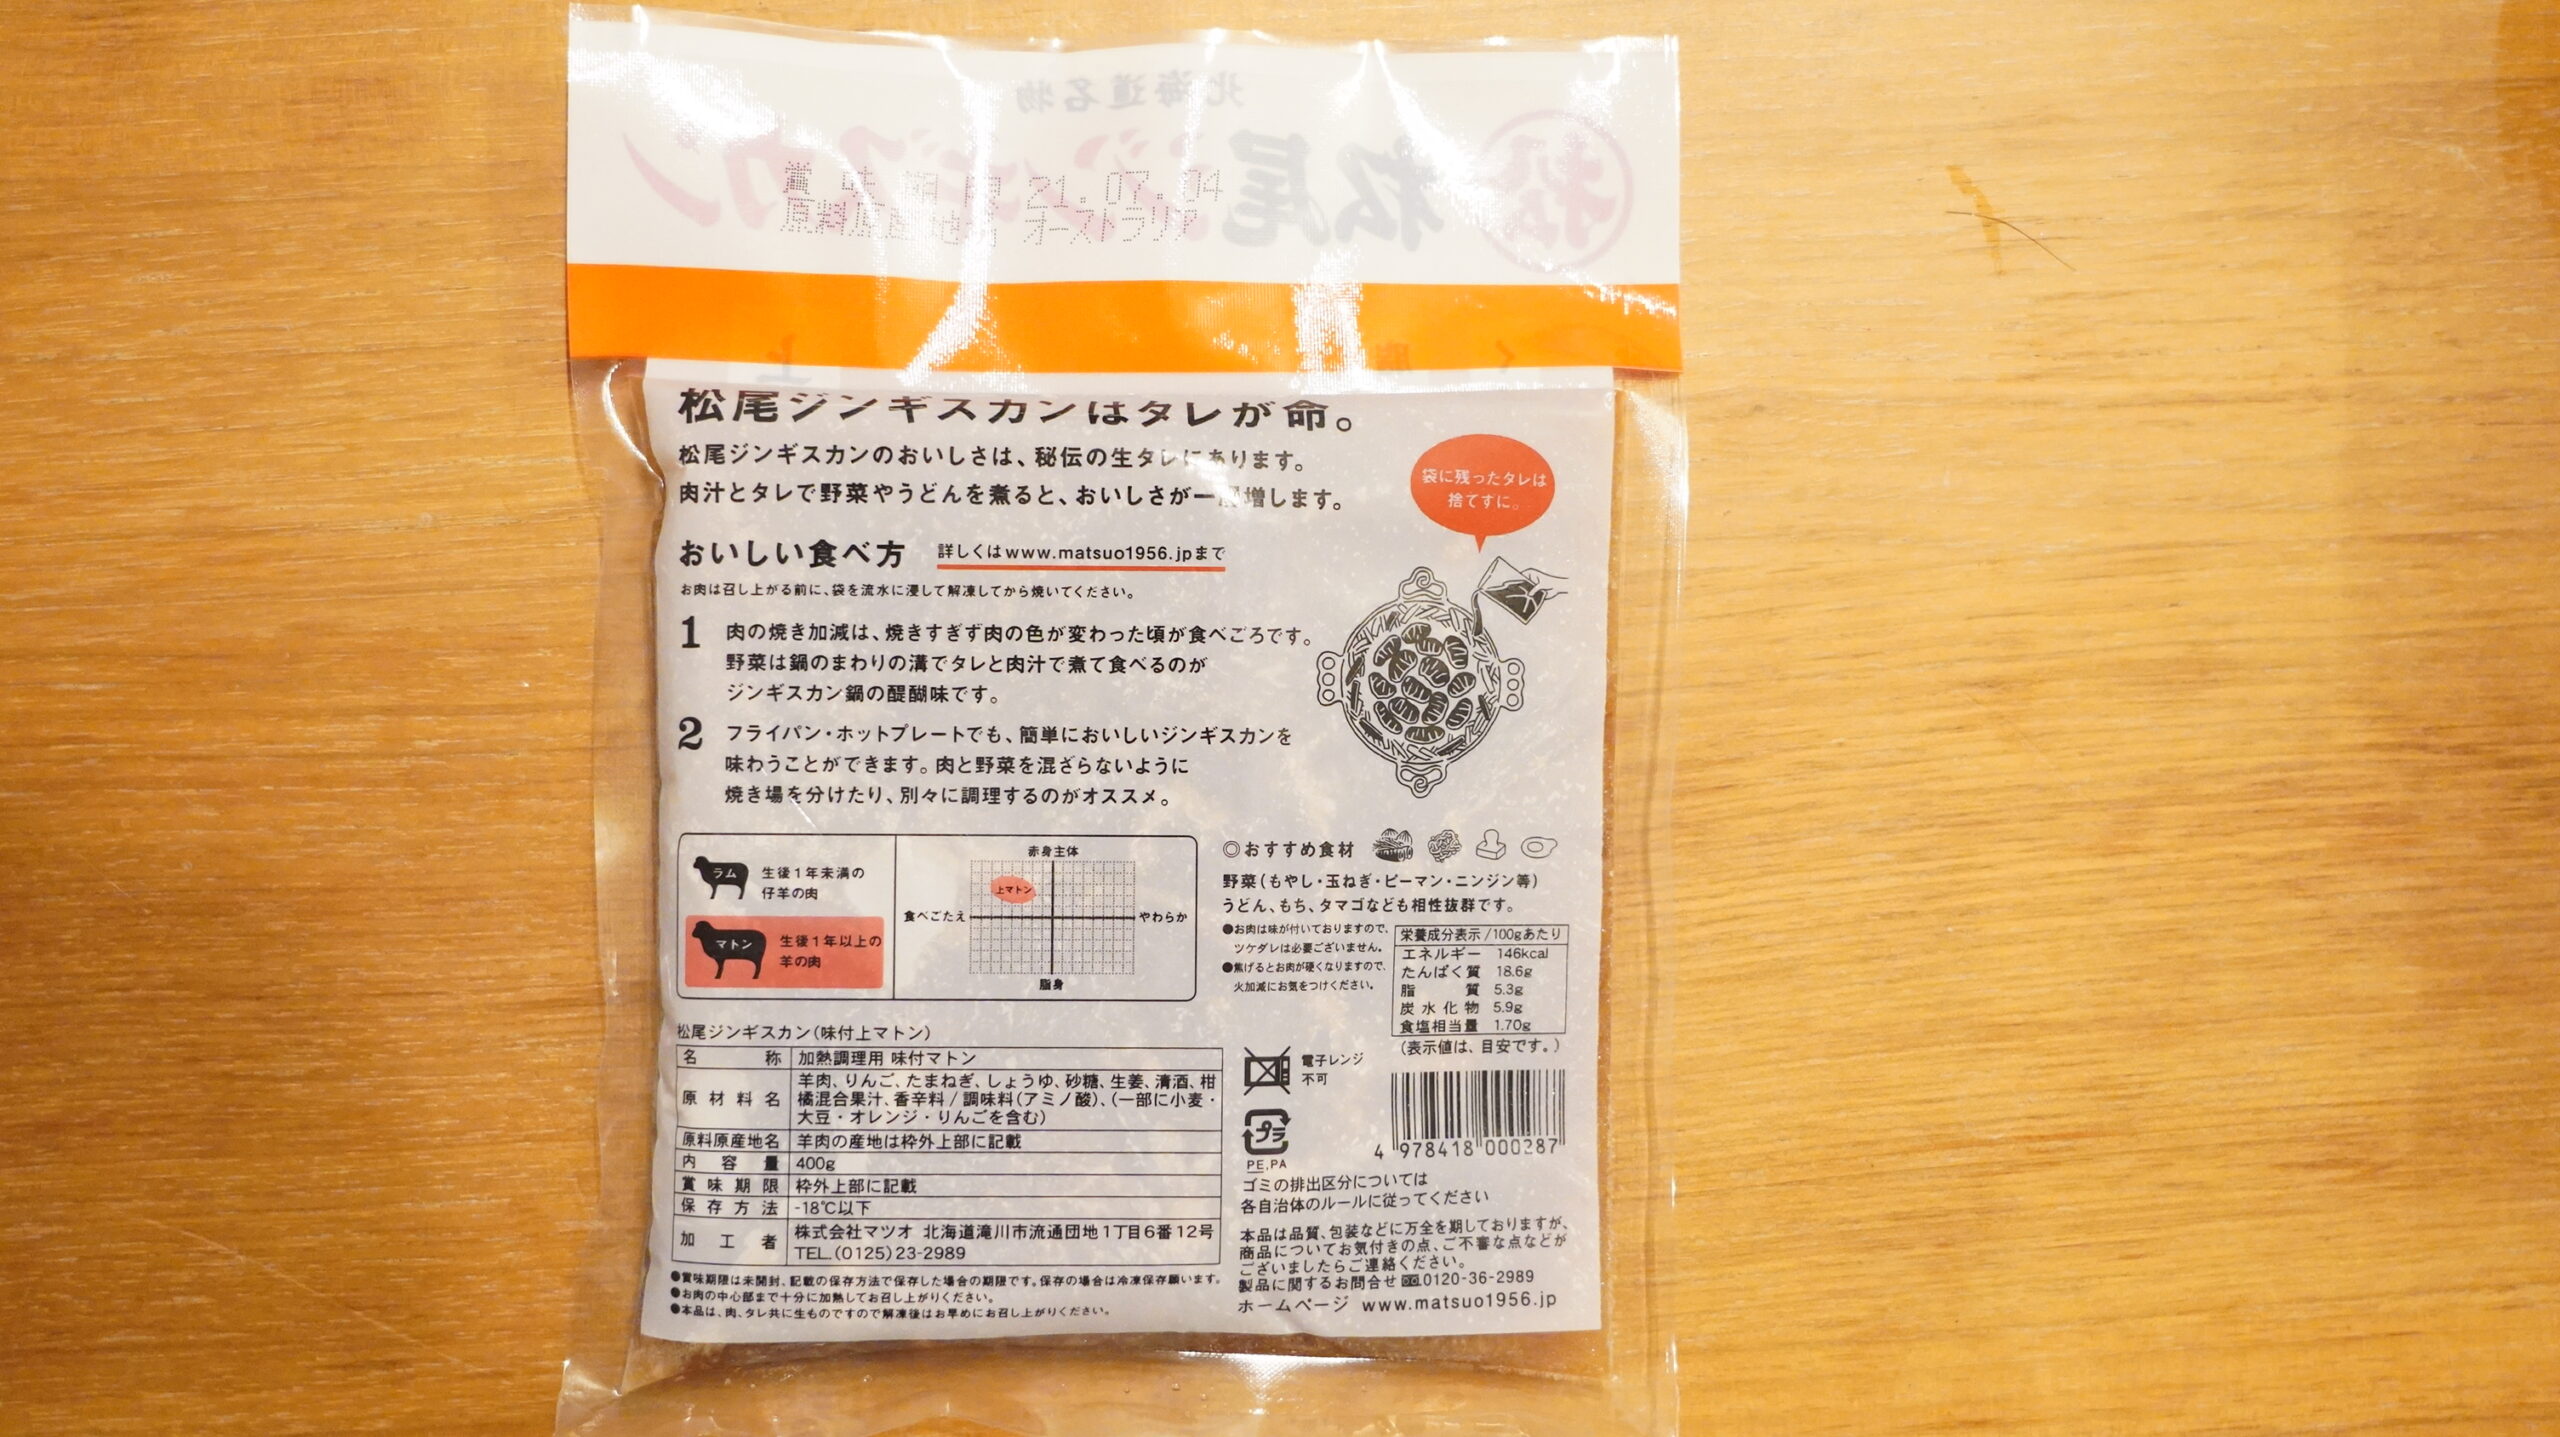 松尾ジンギスカンを通販でお取り寄せした冷凍上マトン肉のパッケージ裏面の写真